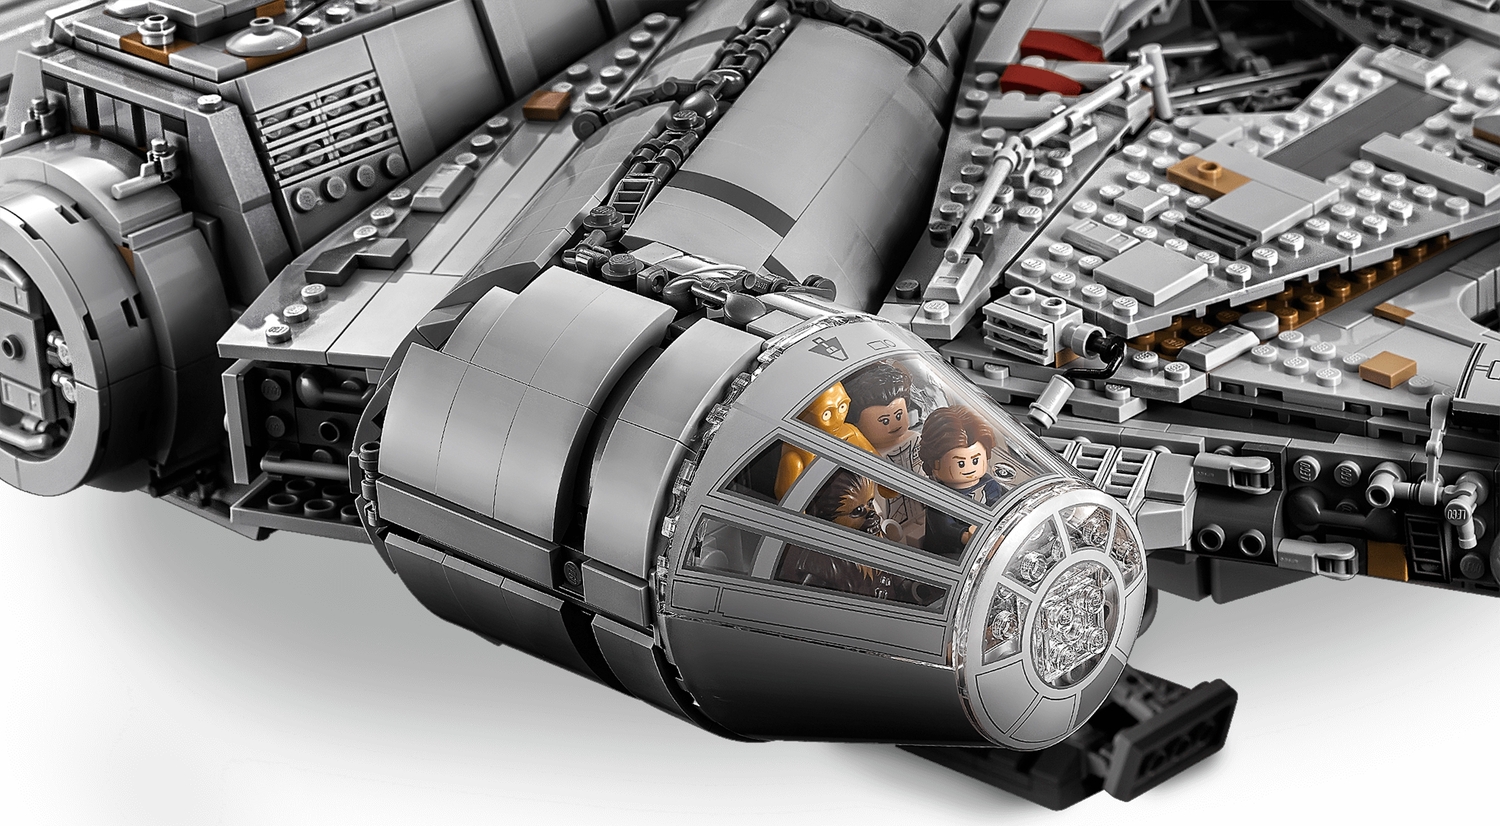 LEGO 75192 Star Wars: Millennium Falcon - That Toys